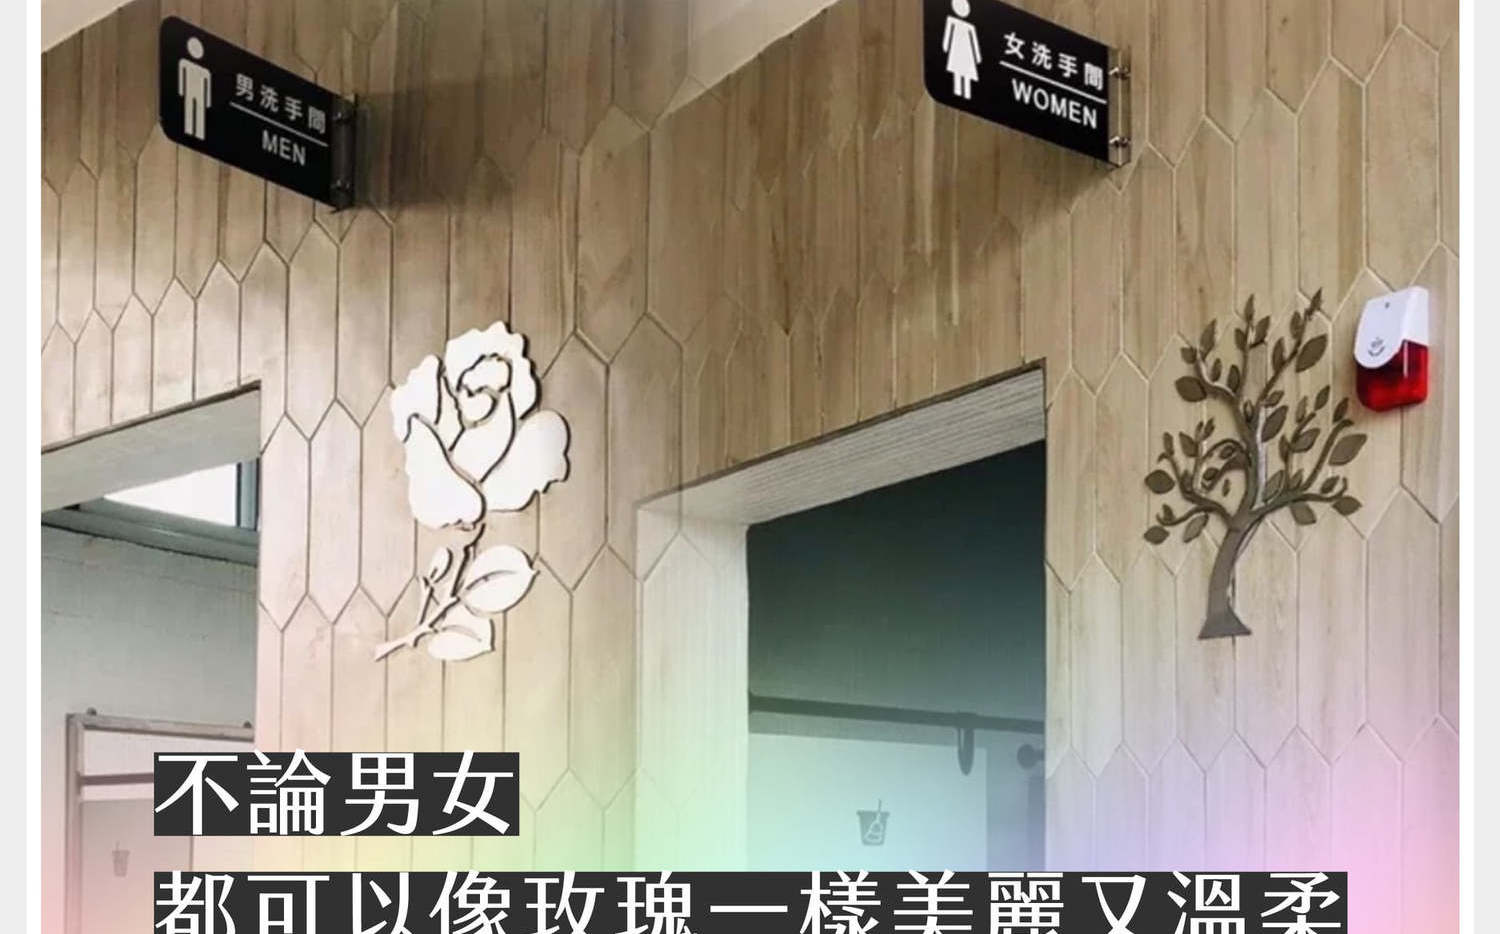 高樹國中男廁鑲上「玫瑰」圖樣  王婉諭: 性別平權永鋕不忘 | 政治 |